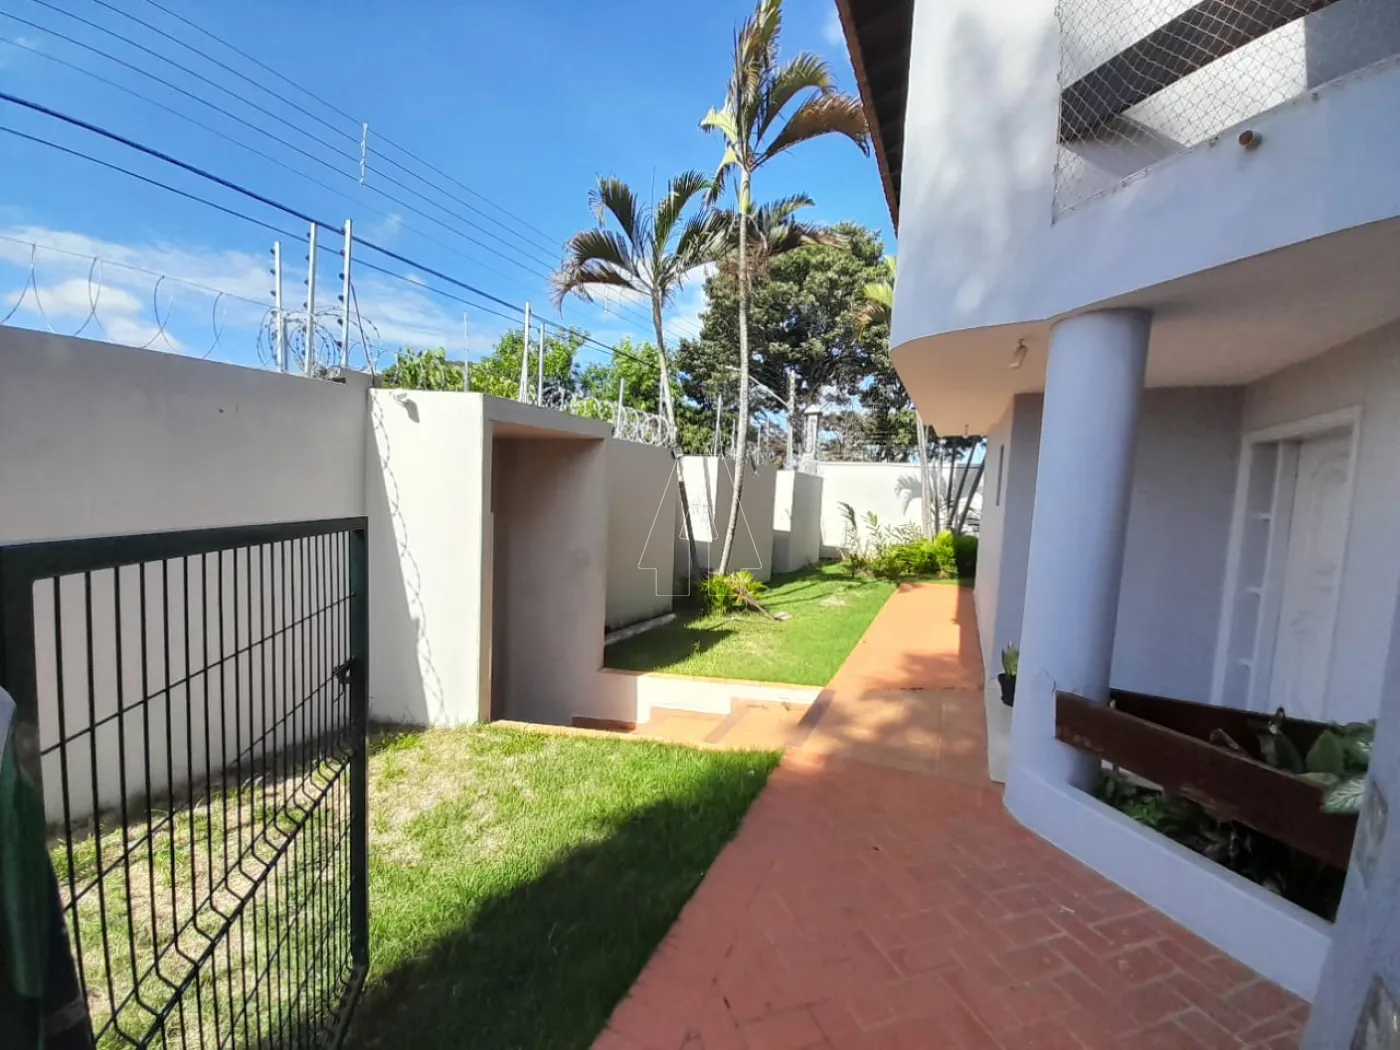 Alugar Casa / Sobrado em Araçatuba R$ 4.500,00 - Foto 3